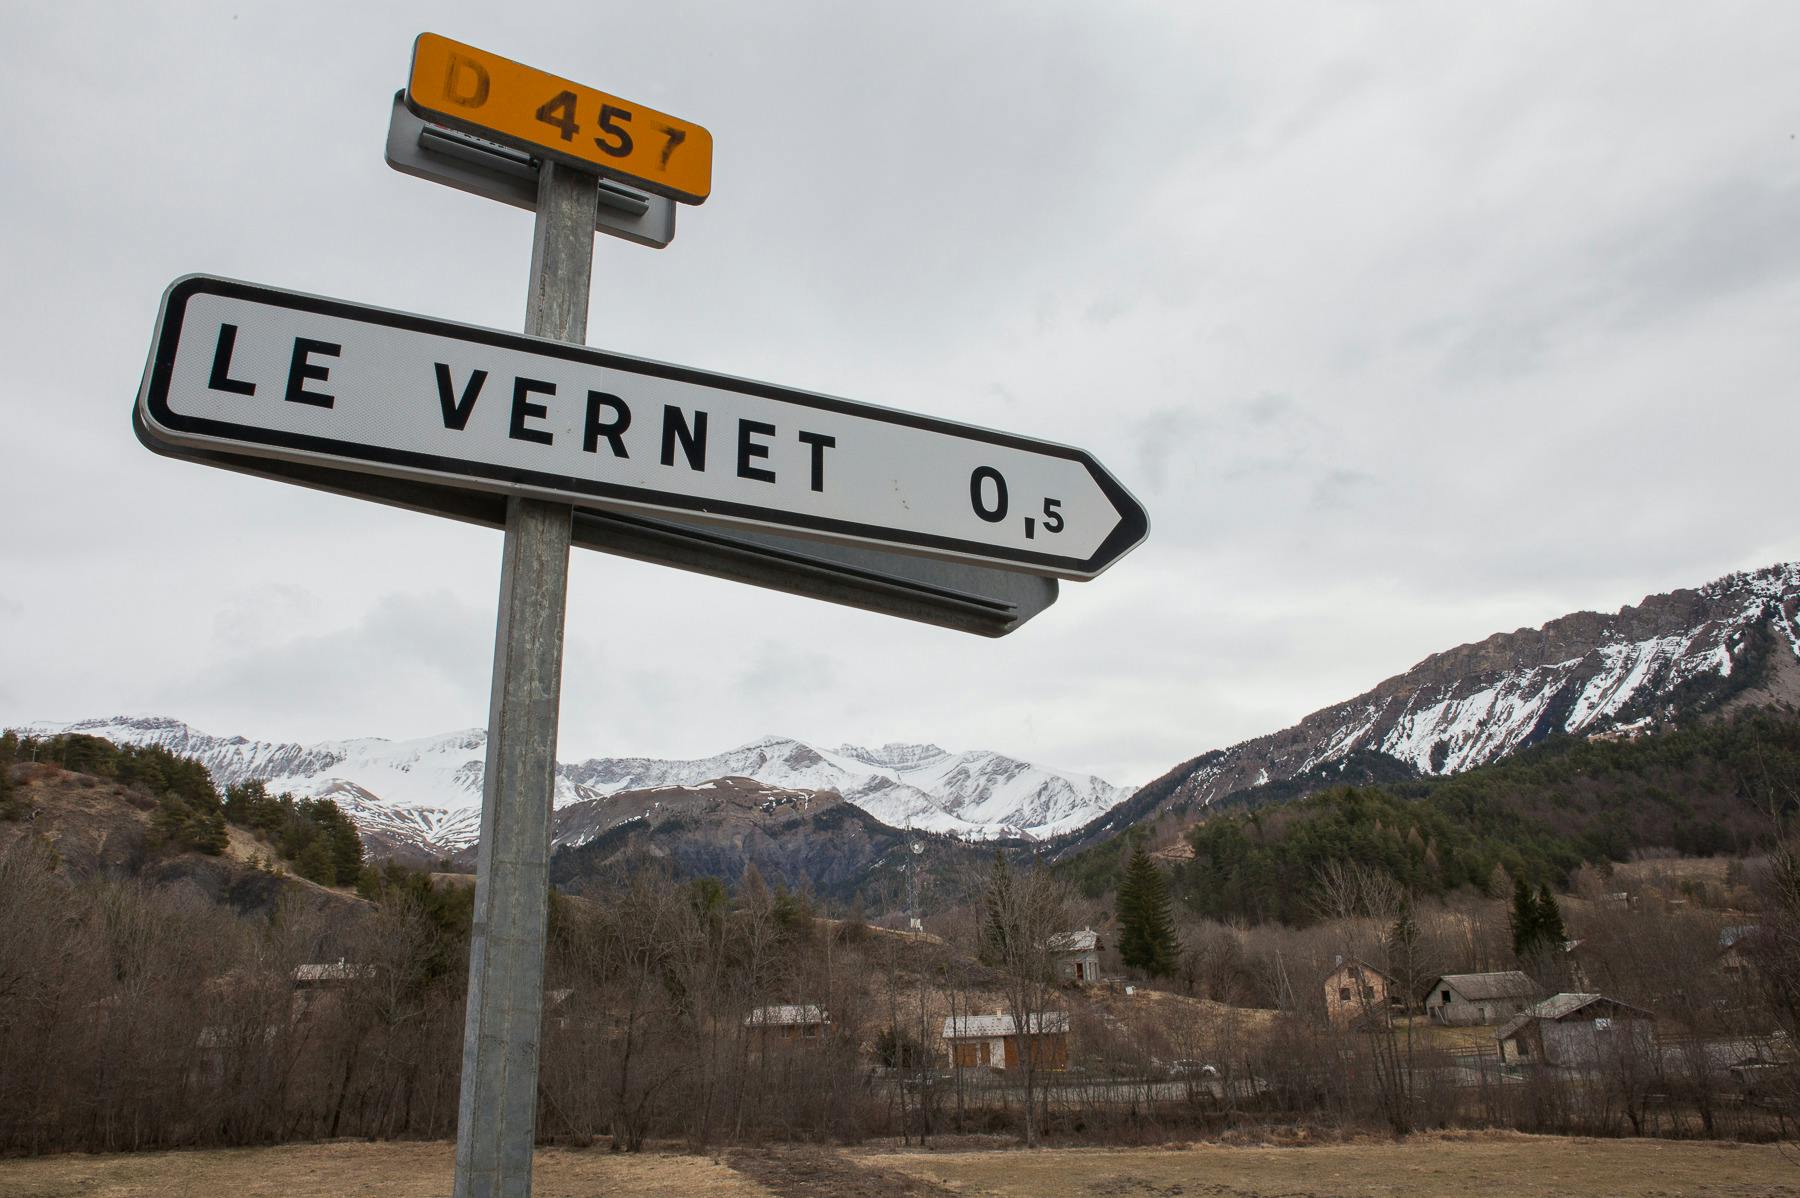 Der er omtrent 20 huse i Le Vernet, men byen har set lidt af hvert. 